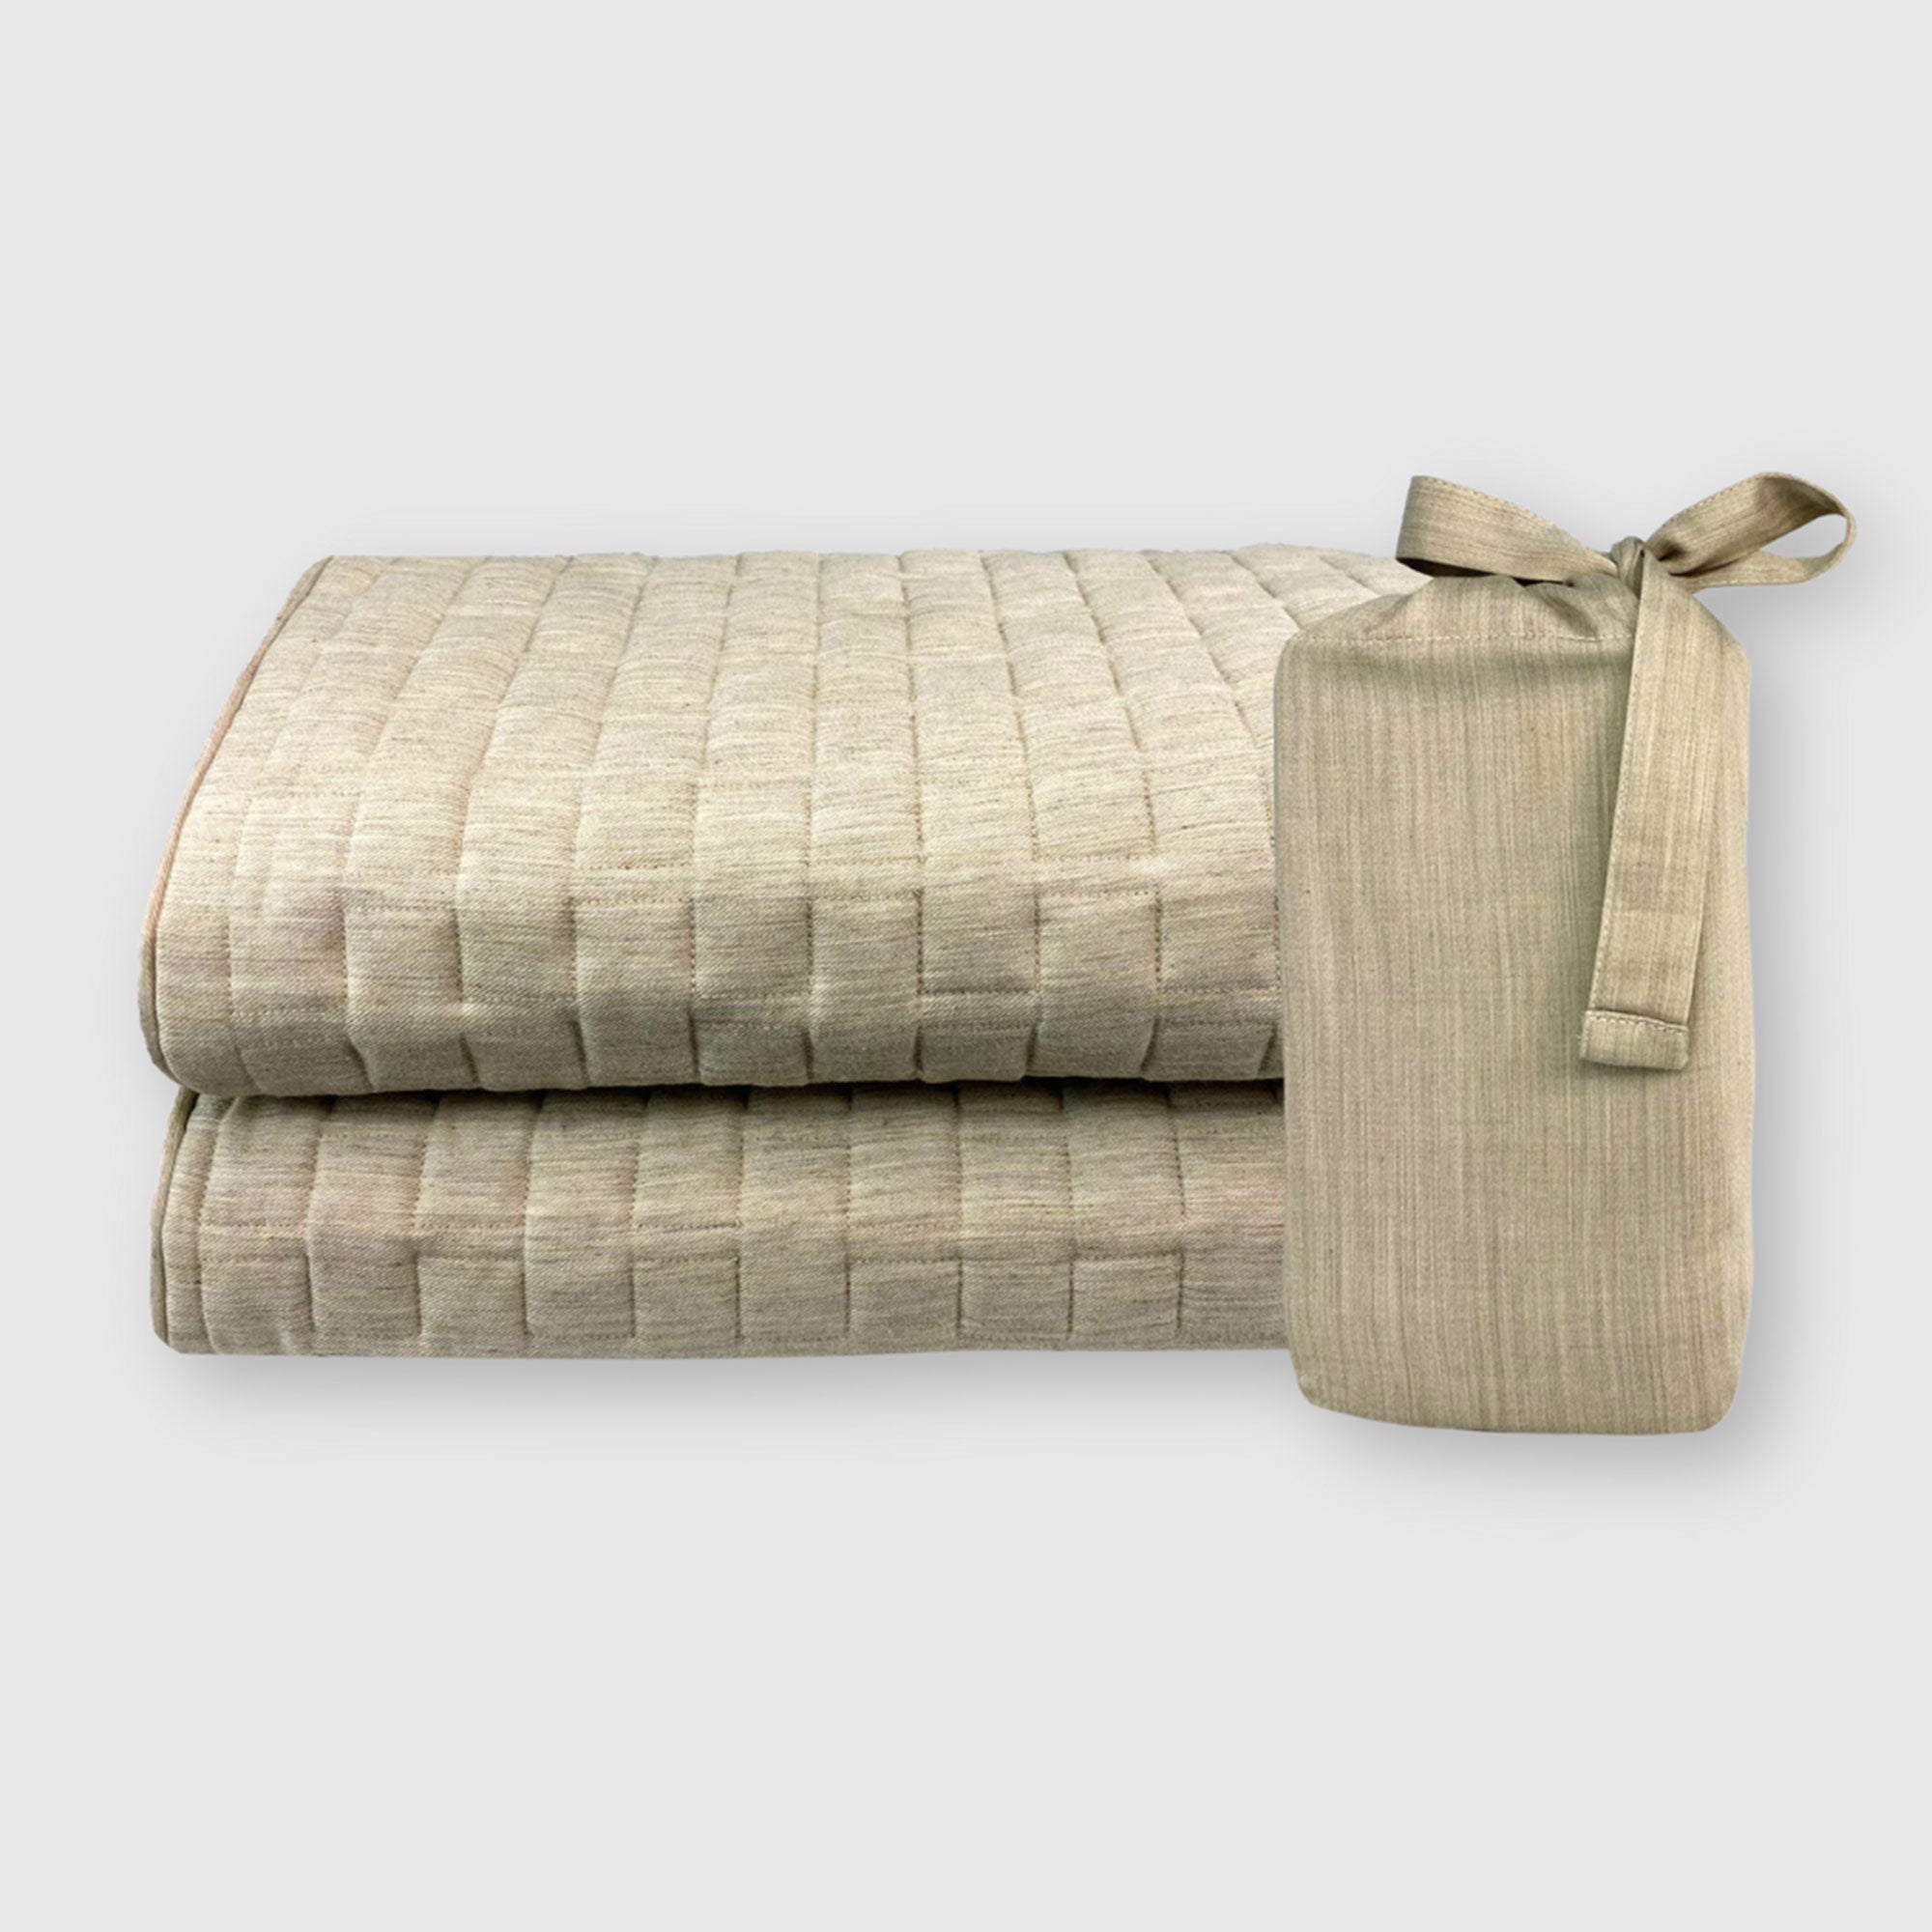 beige sand bamboo quilted standard sham set folded showing linen storage bag